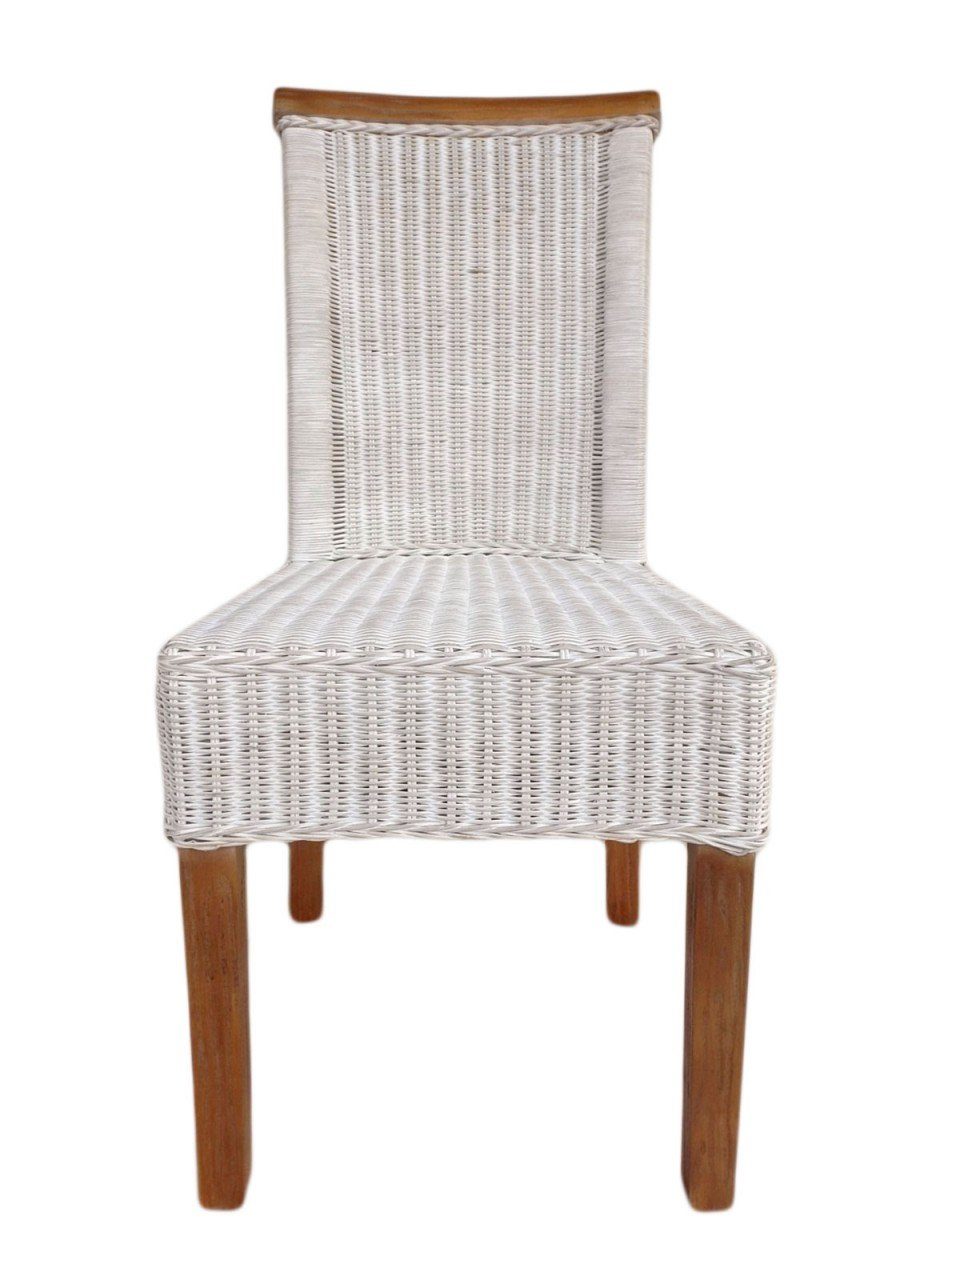 Esszimmer-Stuhl Perth weiß weiß, Sitzmöbel soma Sessel Stuhl Sitzkissen Sitzplatz Rattanstuhl Sessel Soma Leinen